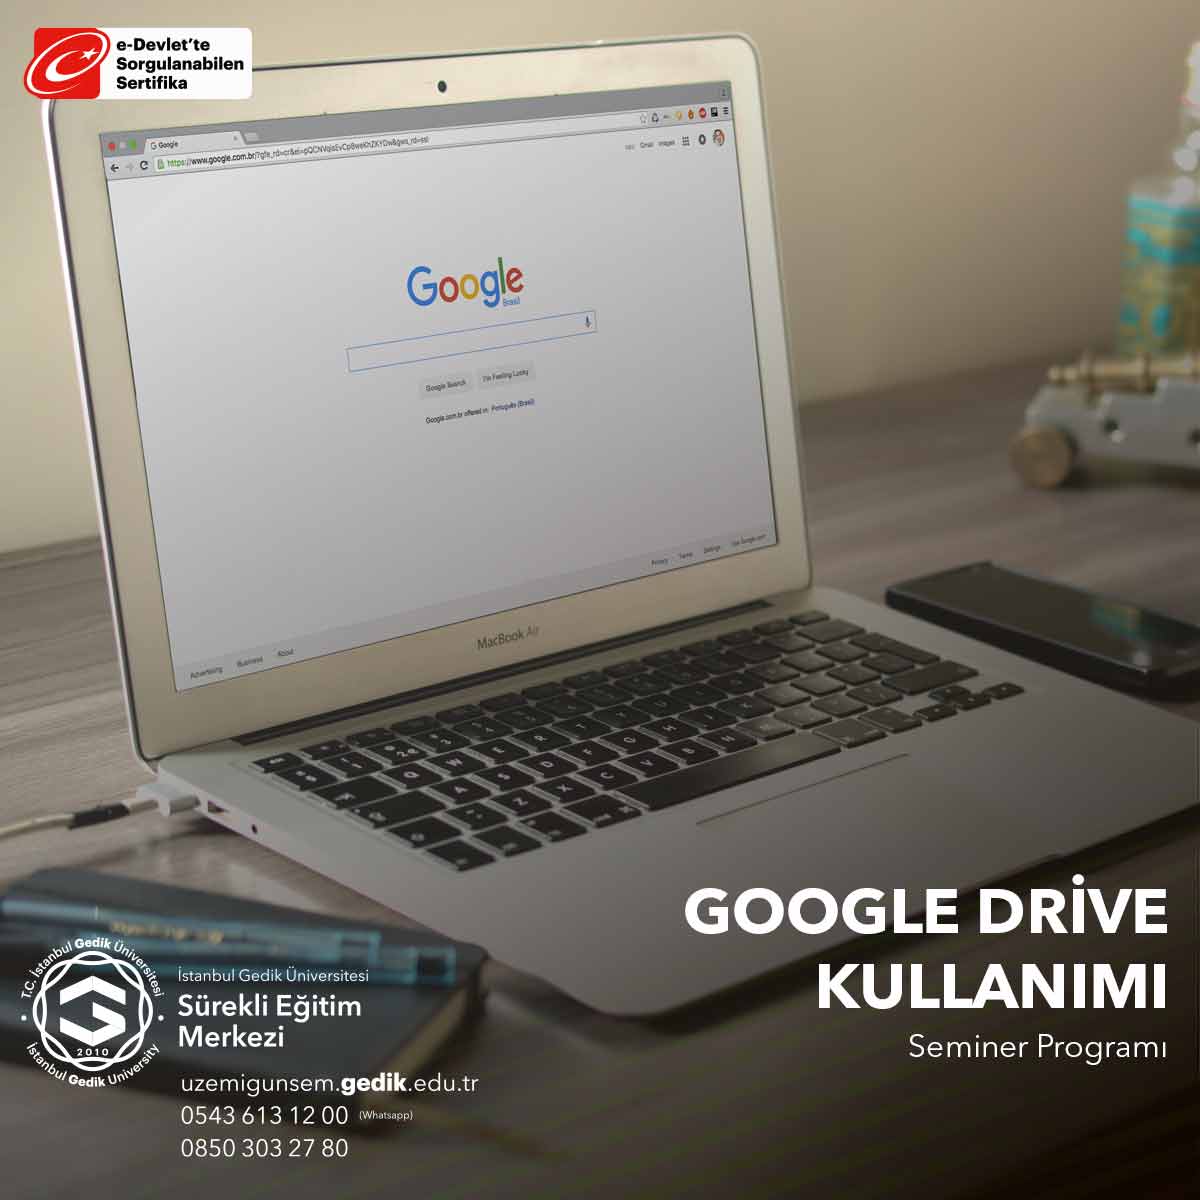 Google Drive Kullanımı, kullanıcılara bulut tabanlı depolama ve işbirliği araçları sunan bir platformu etkili bir şekilde kullanmayı öğrenmelerini sağlayan önemli bir yetenektir.